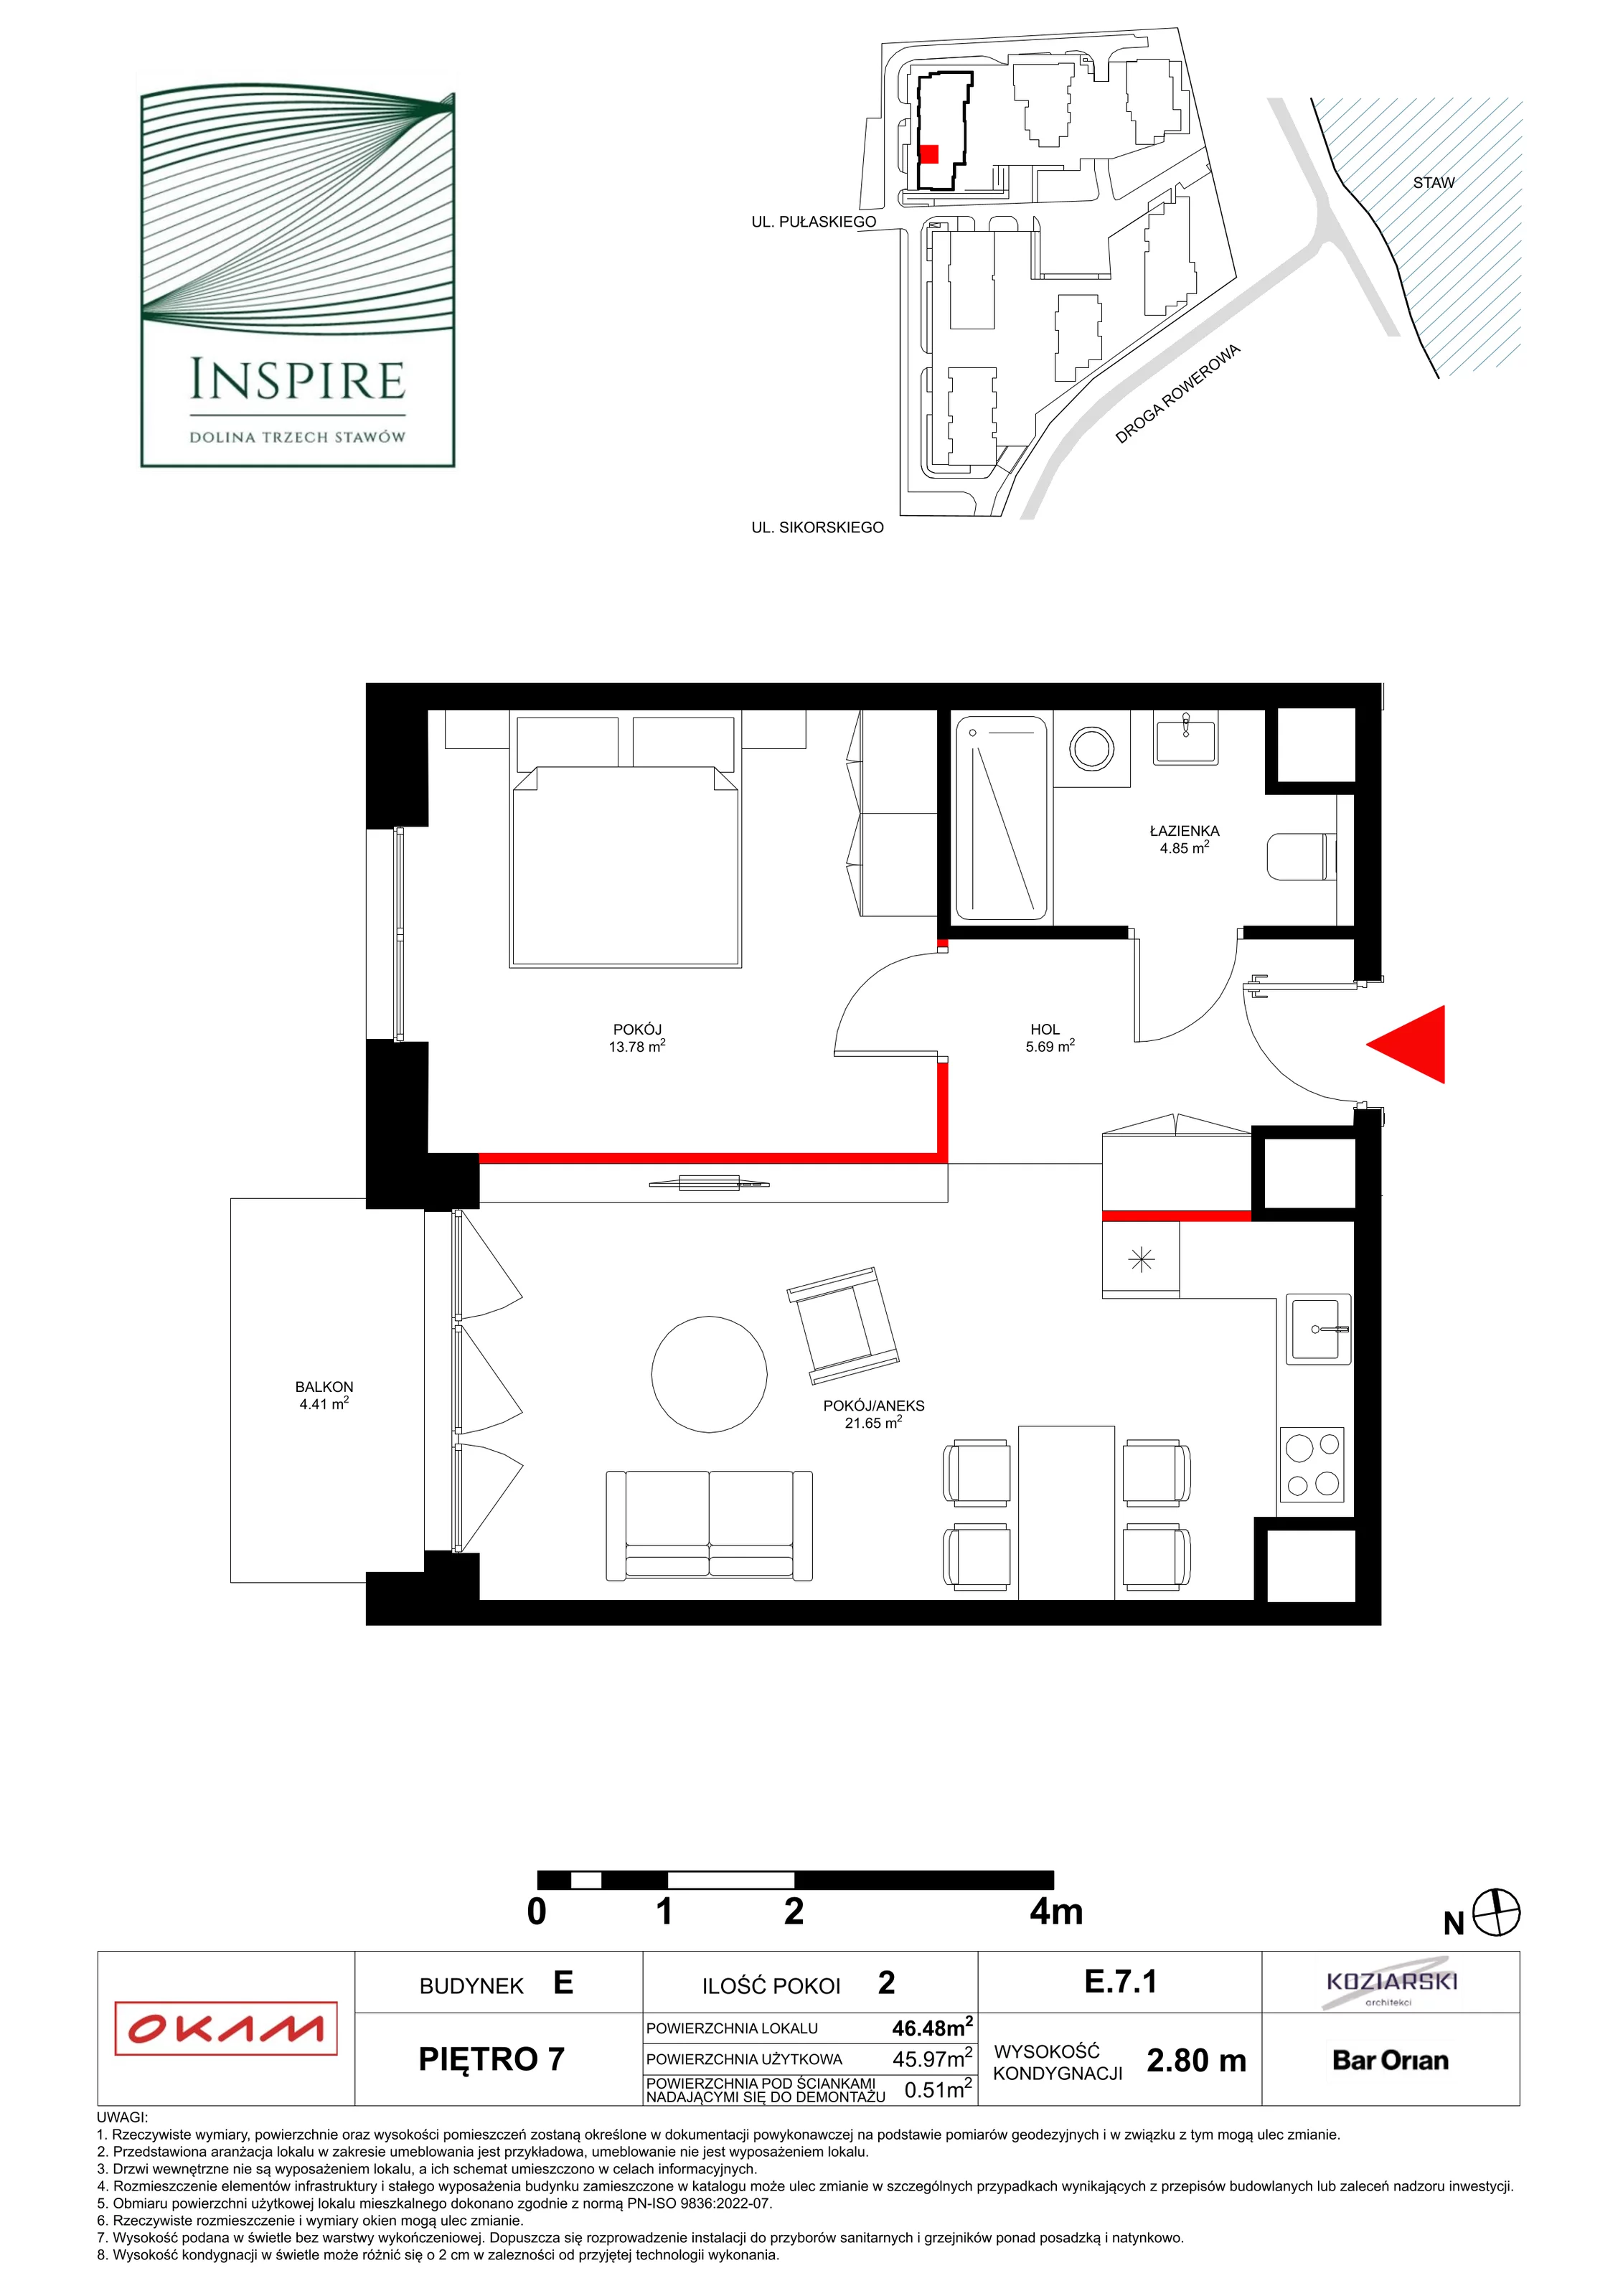 Apartament 45,97 m², piętro 7, oferta nr E.7.1, Inspire, Katowice, Osiedle Paderewskiego-Muchowiec, Dolina Trzech Stawów, ul. gen. Sikorskiego 41